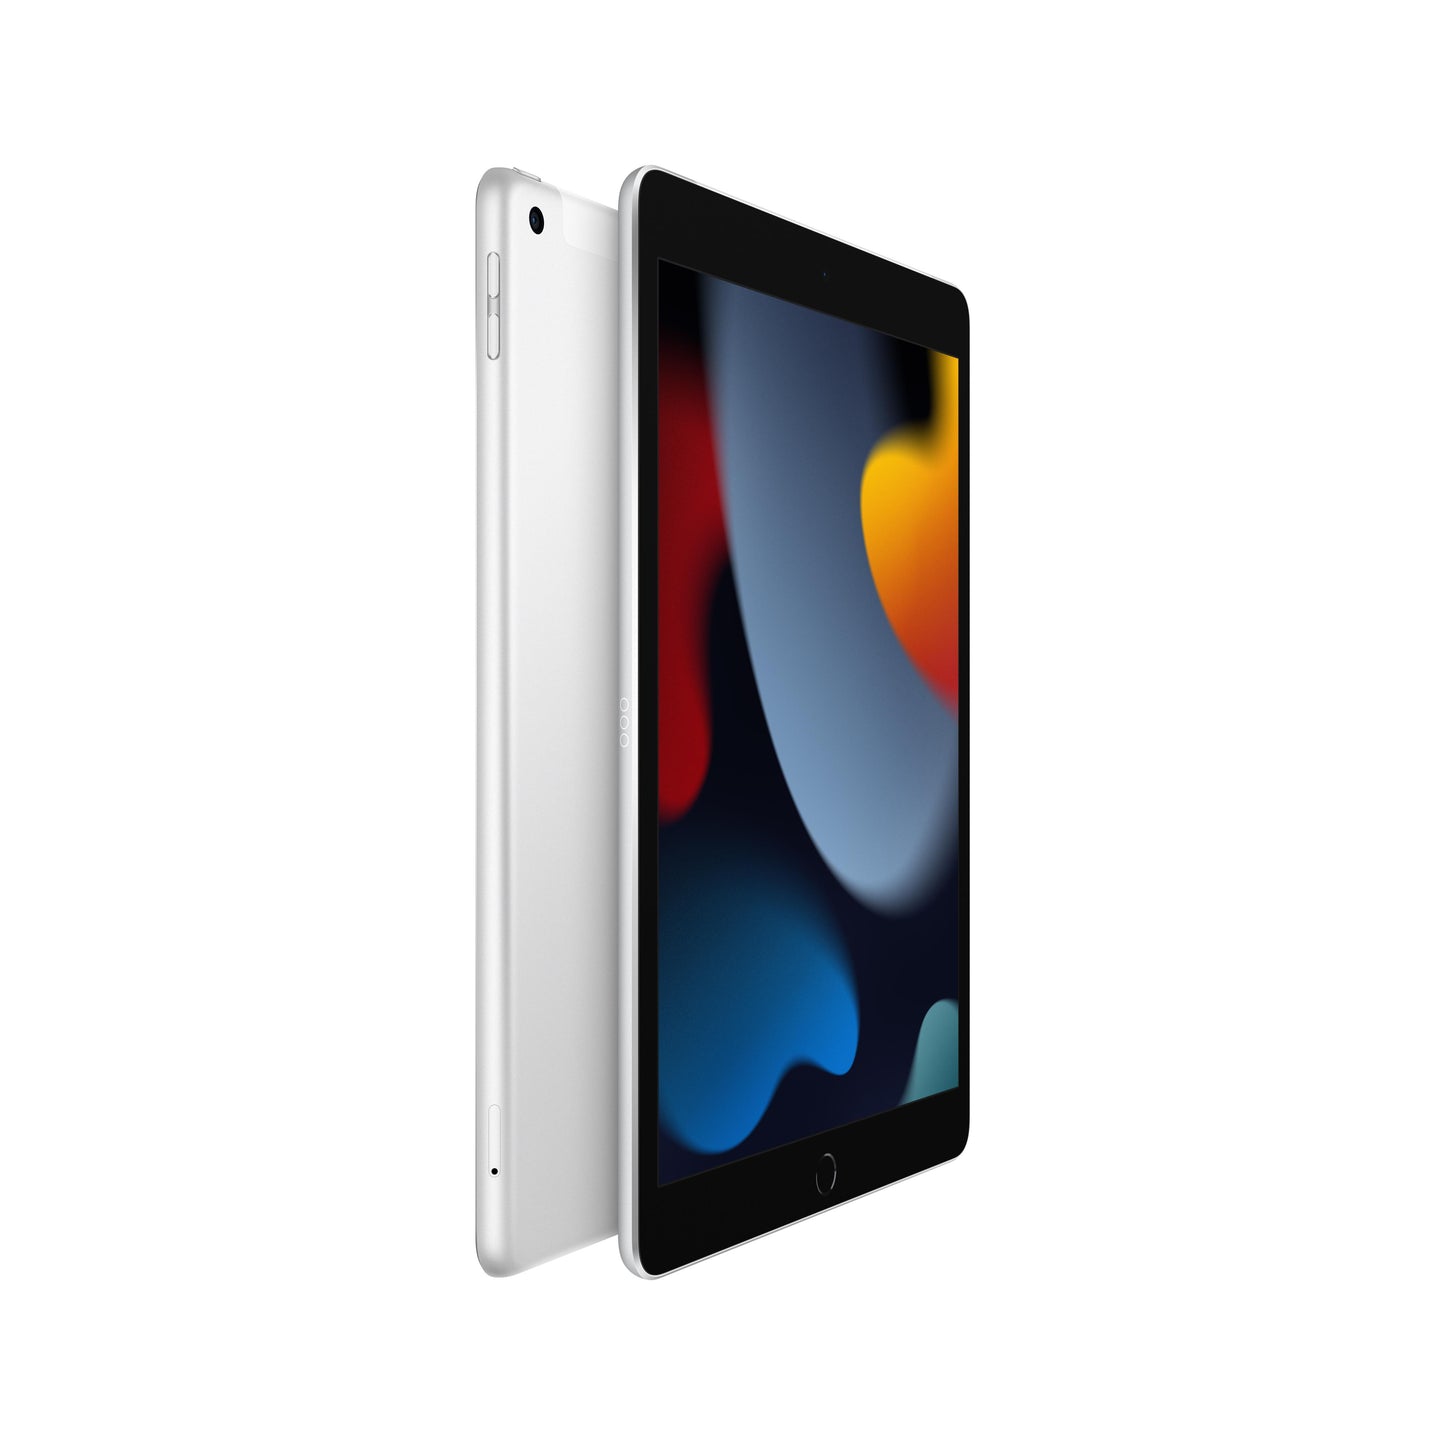 iPad (9th Gen) Wi-Fi + Cellular 64GB - Silver